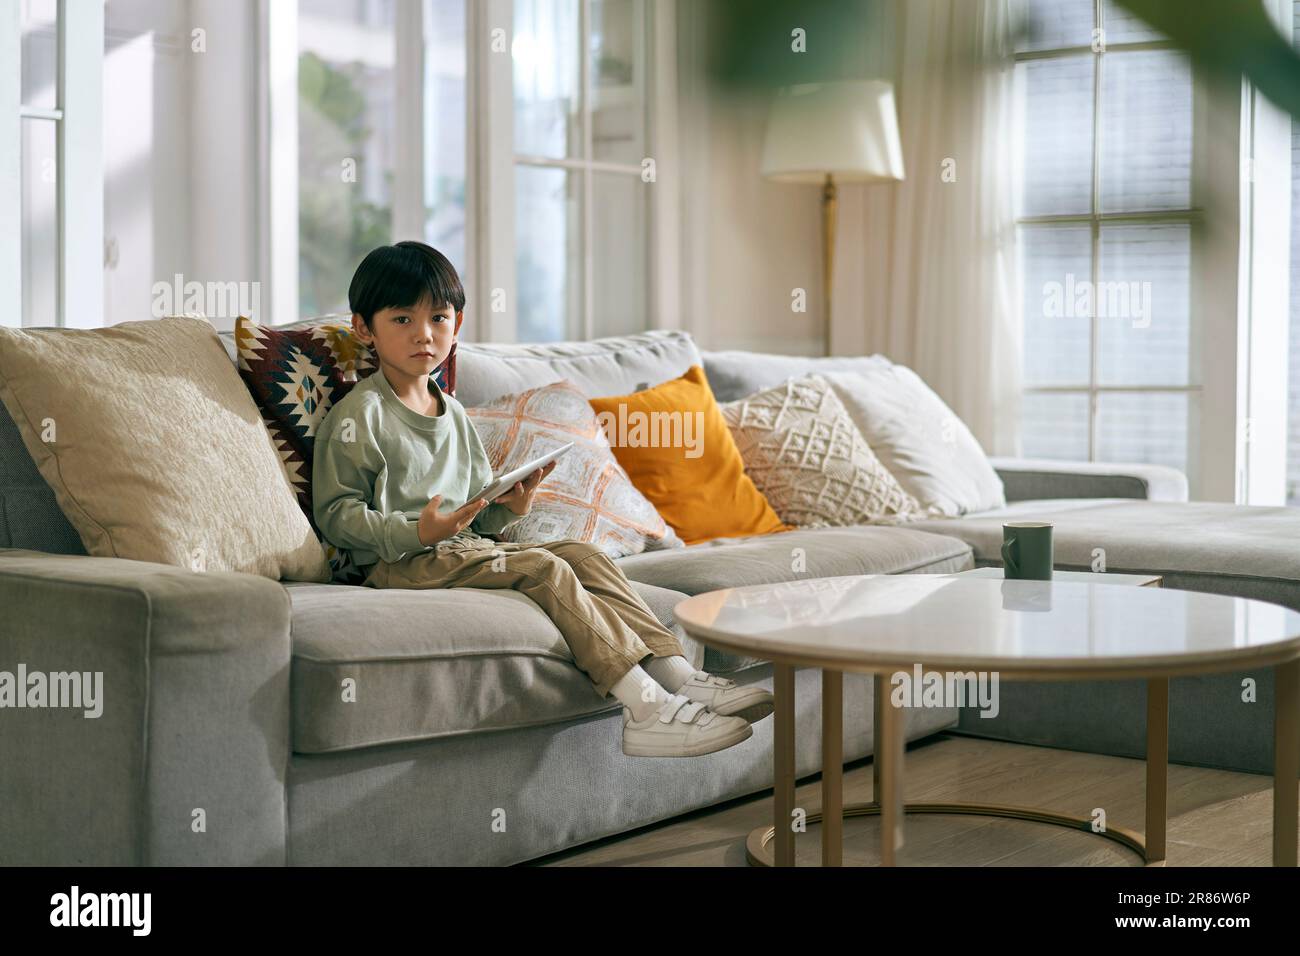 petit garçon asiatique assis sur un canapé de famille dans la salle de séjour à la maison regardant la caméra Banque D'Images